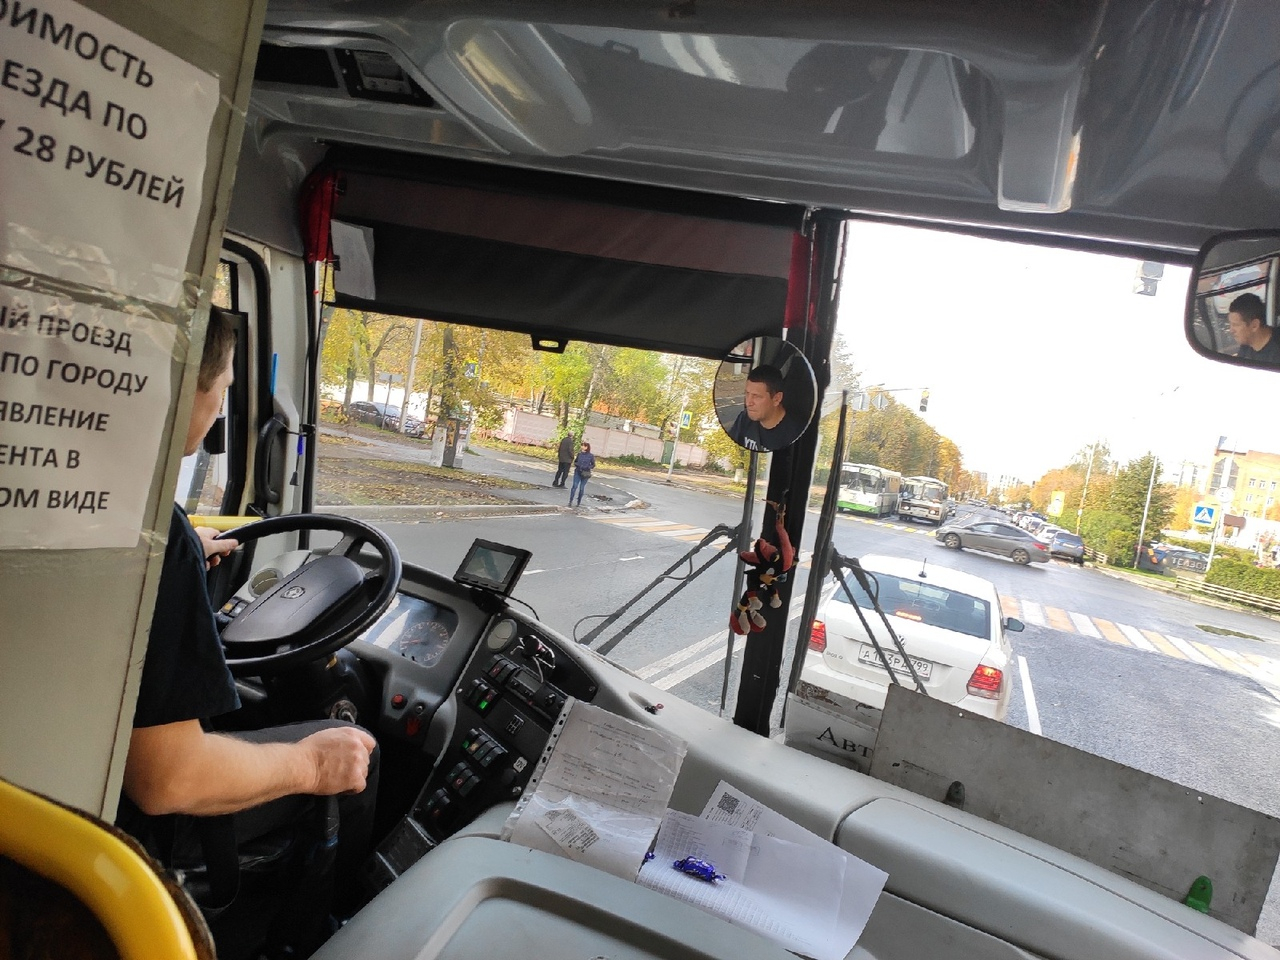 Ходит в черной дубленке: пассажиры рассказали об автобусном воришке в Ярославле